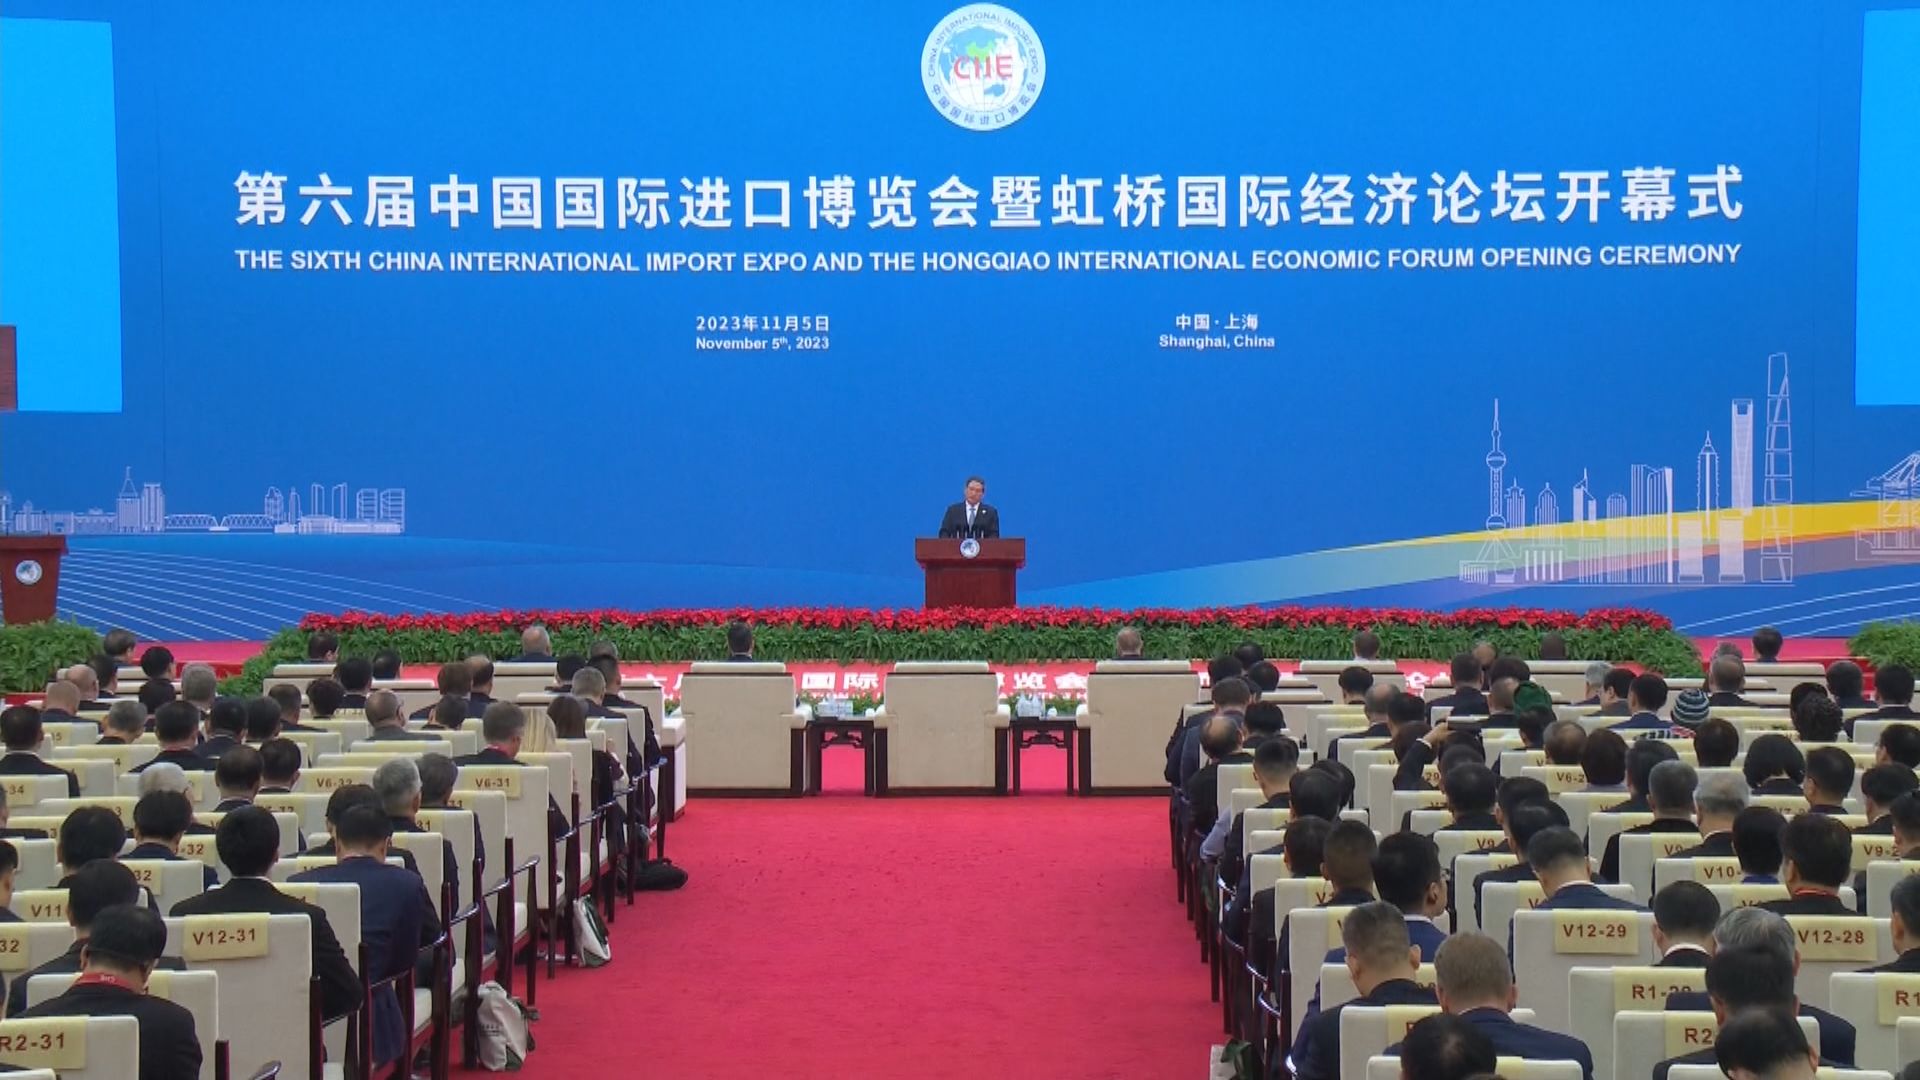 上海進博會開幕 李強稱開放合作互利共贏是最明智、最自然選擇 